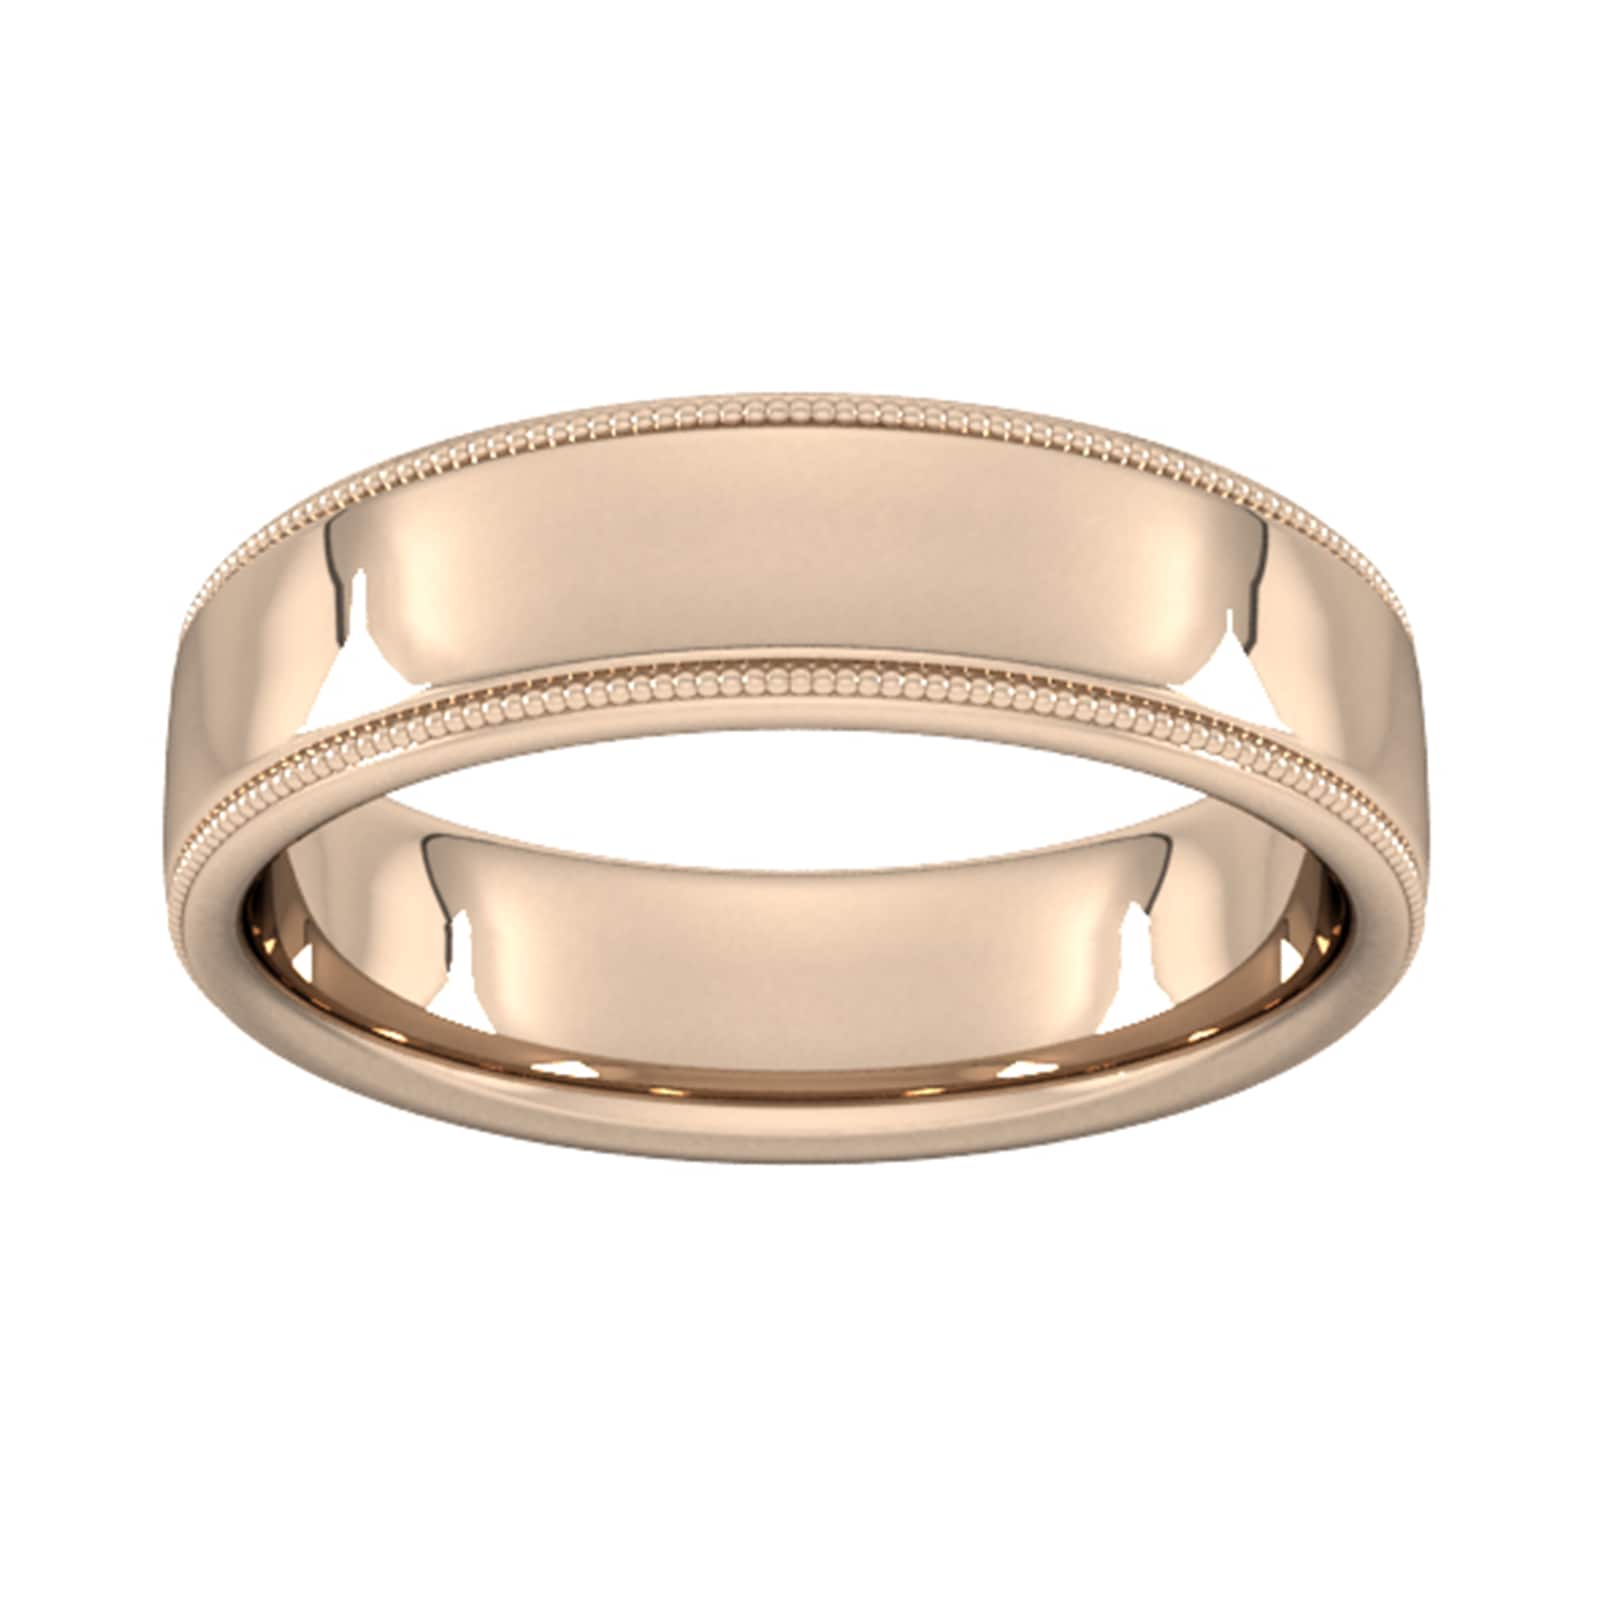 6mm Slight Court Standard Milgrain Edge Wedding Ring In 18 Carat Rose Gold - Ring Size I